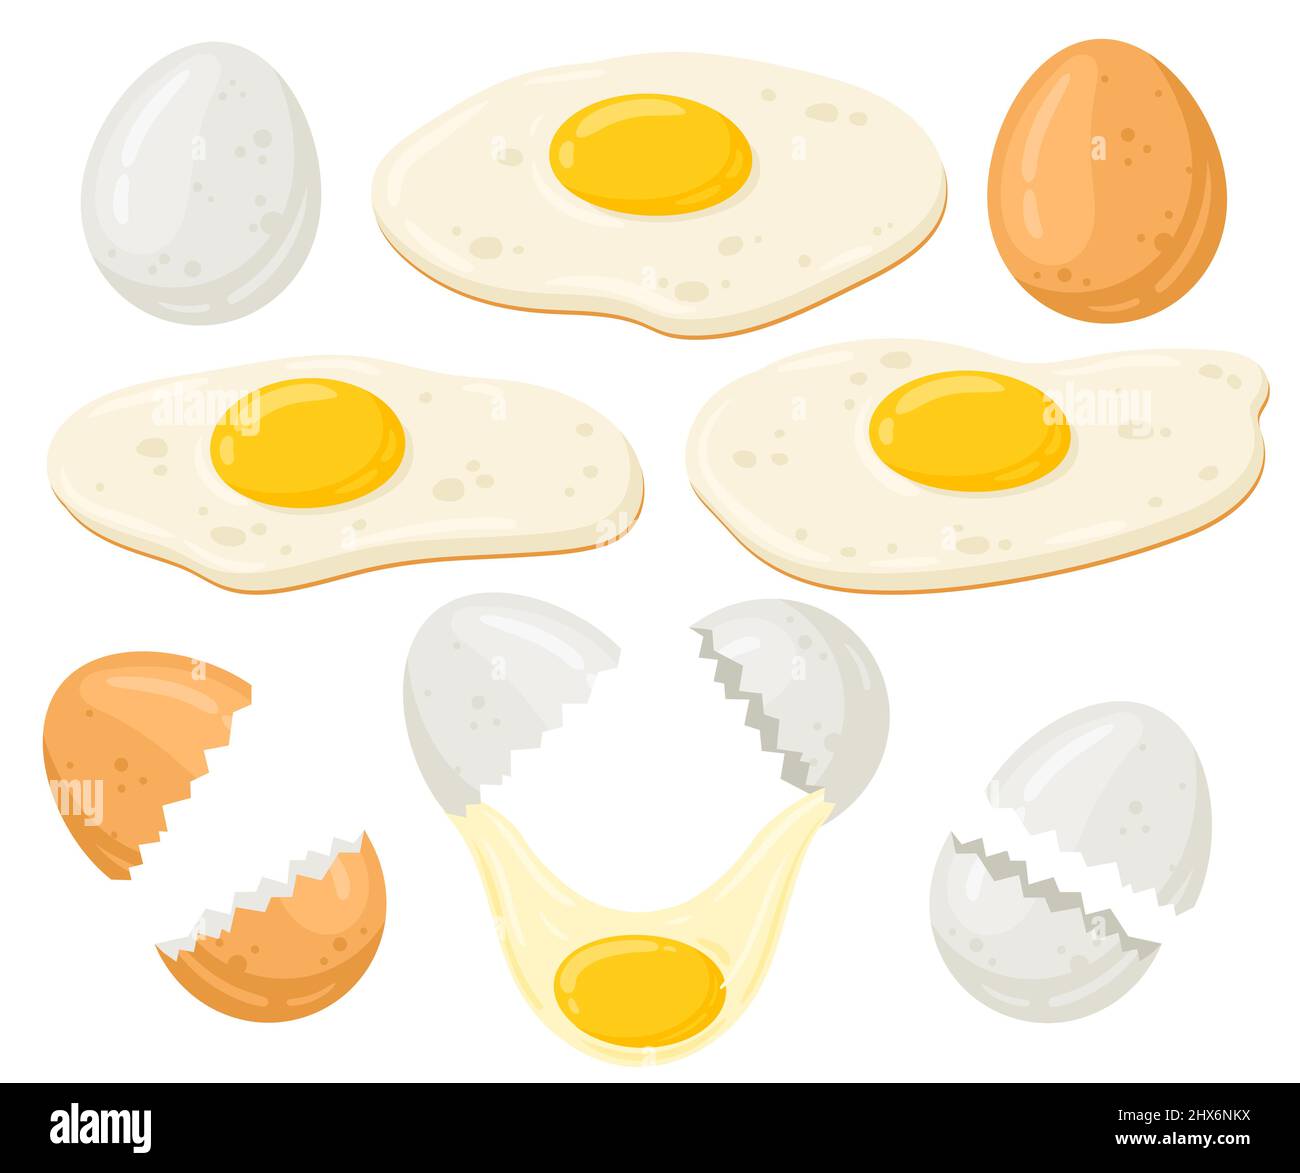 Ensemble d'illustrations vectorielles pour œufs de poulet à dessin animé. Œufs frais, frits, œufs cassés. Nourriture agricole biologique isolée sur fond blanc. Illustration de Vecteur